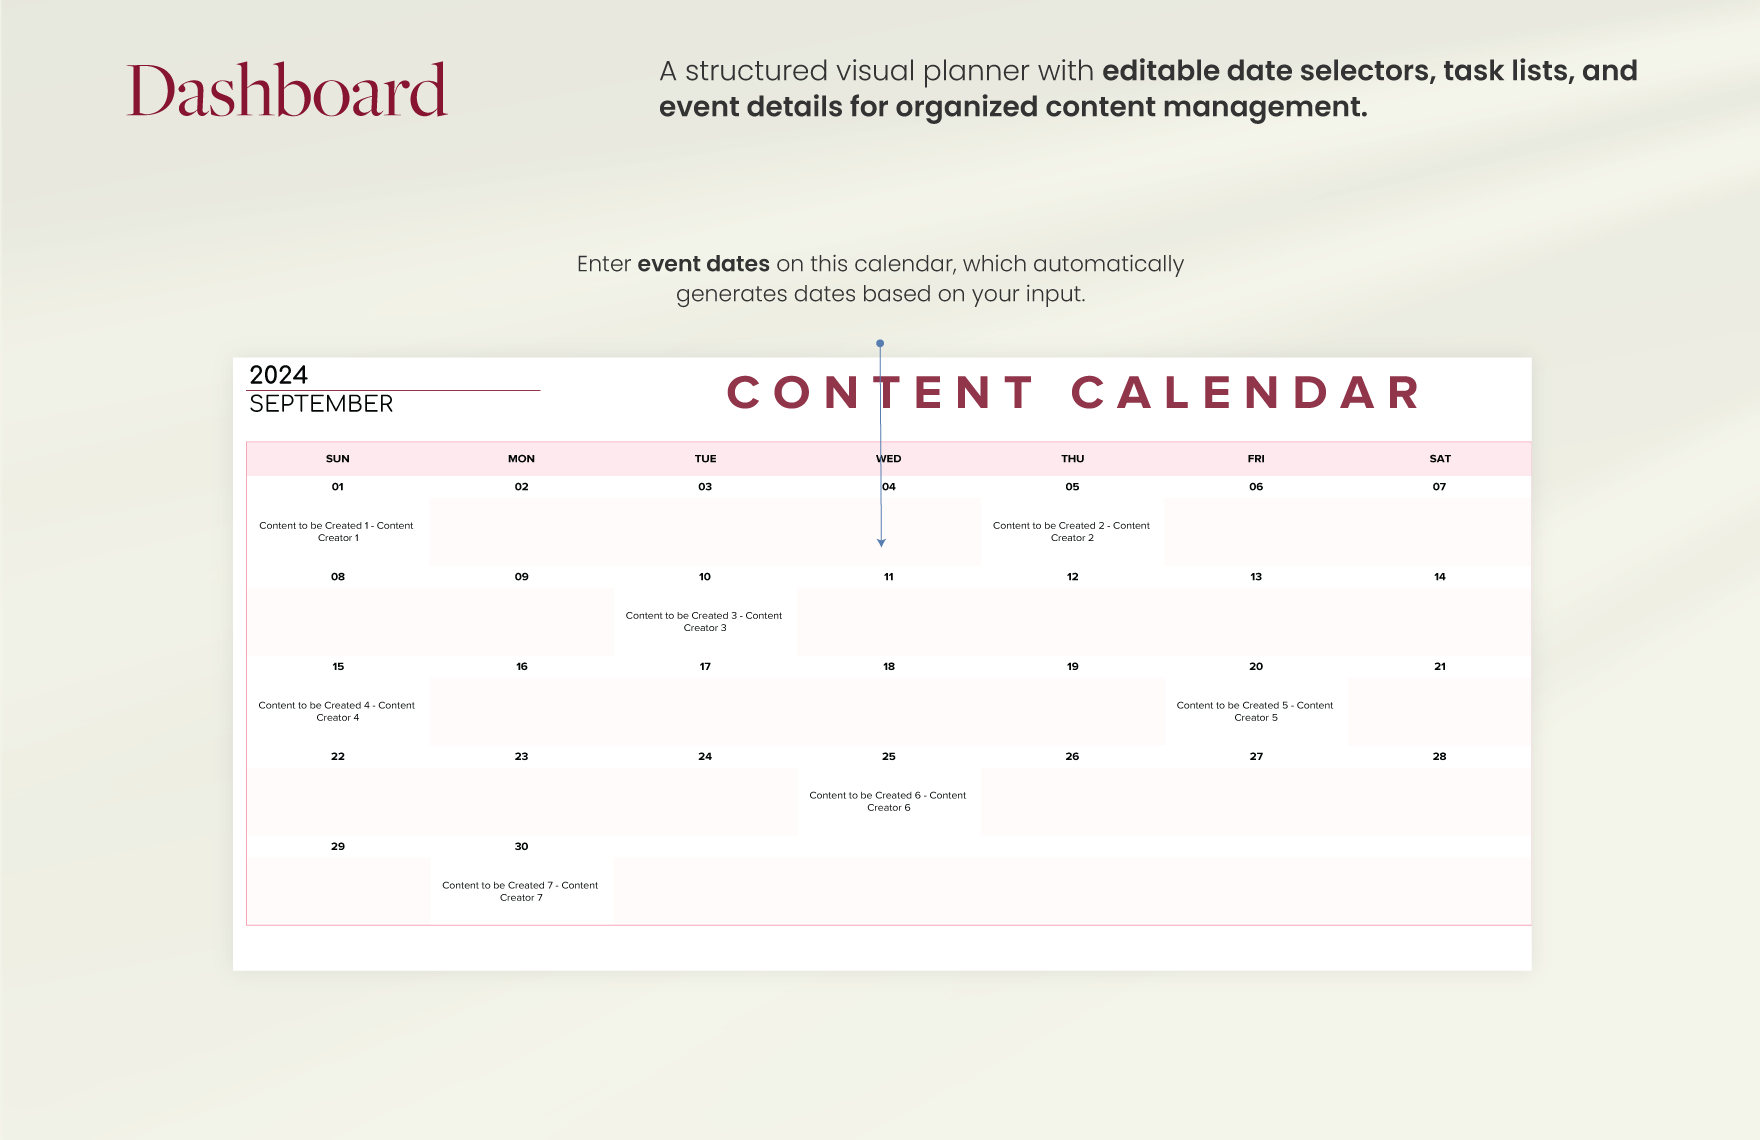 Content Calendar Template